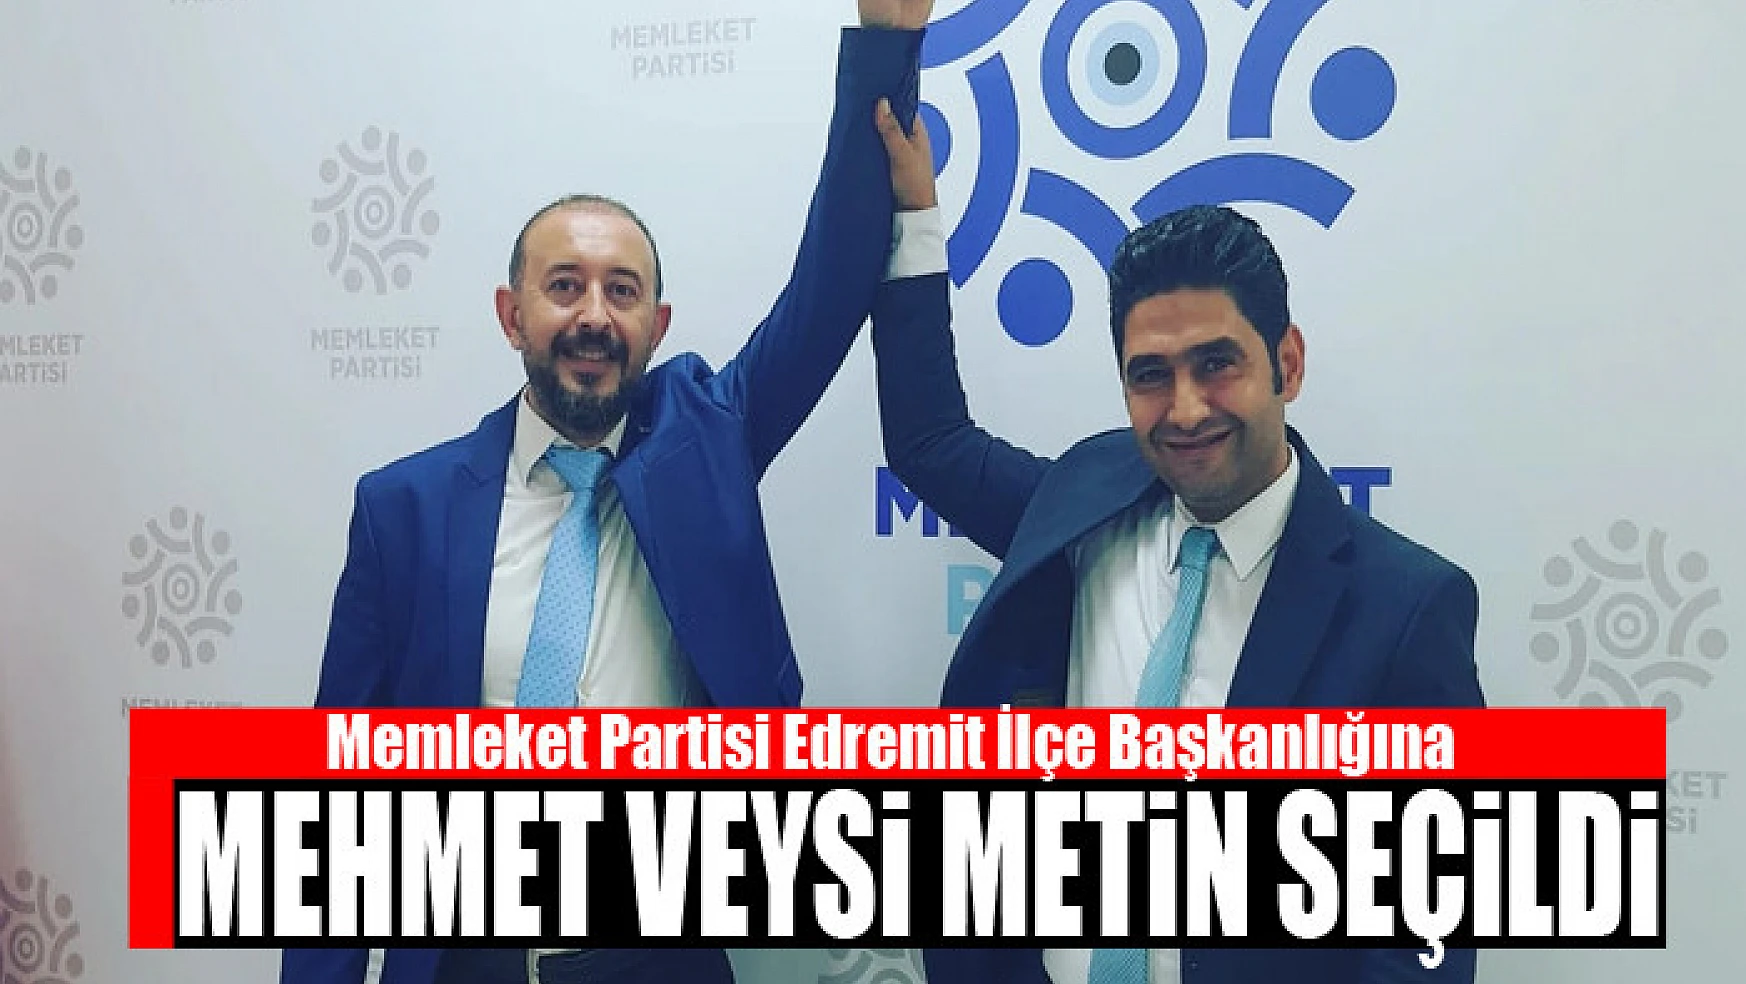 Memleket Partisi Edremit İlçe Başkanlığına Mehmet Veysi Metin seçildi